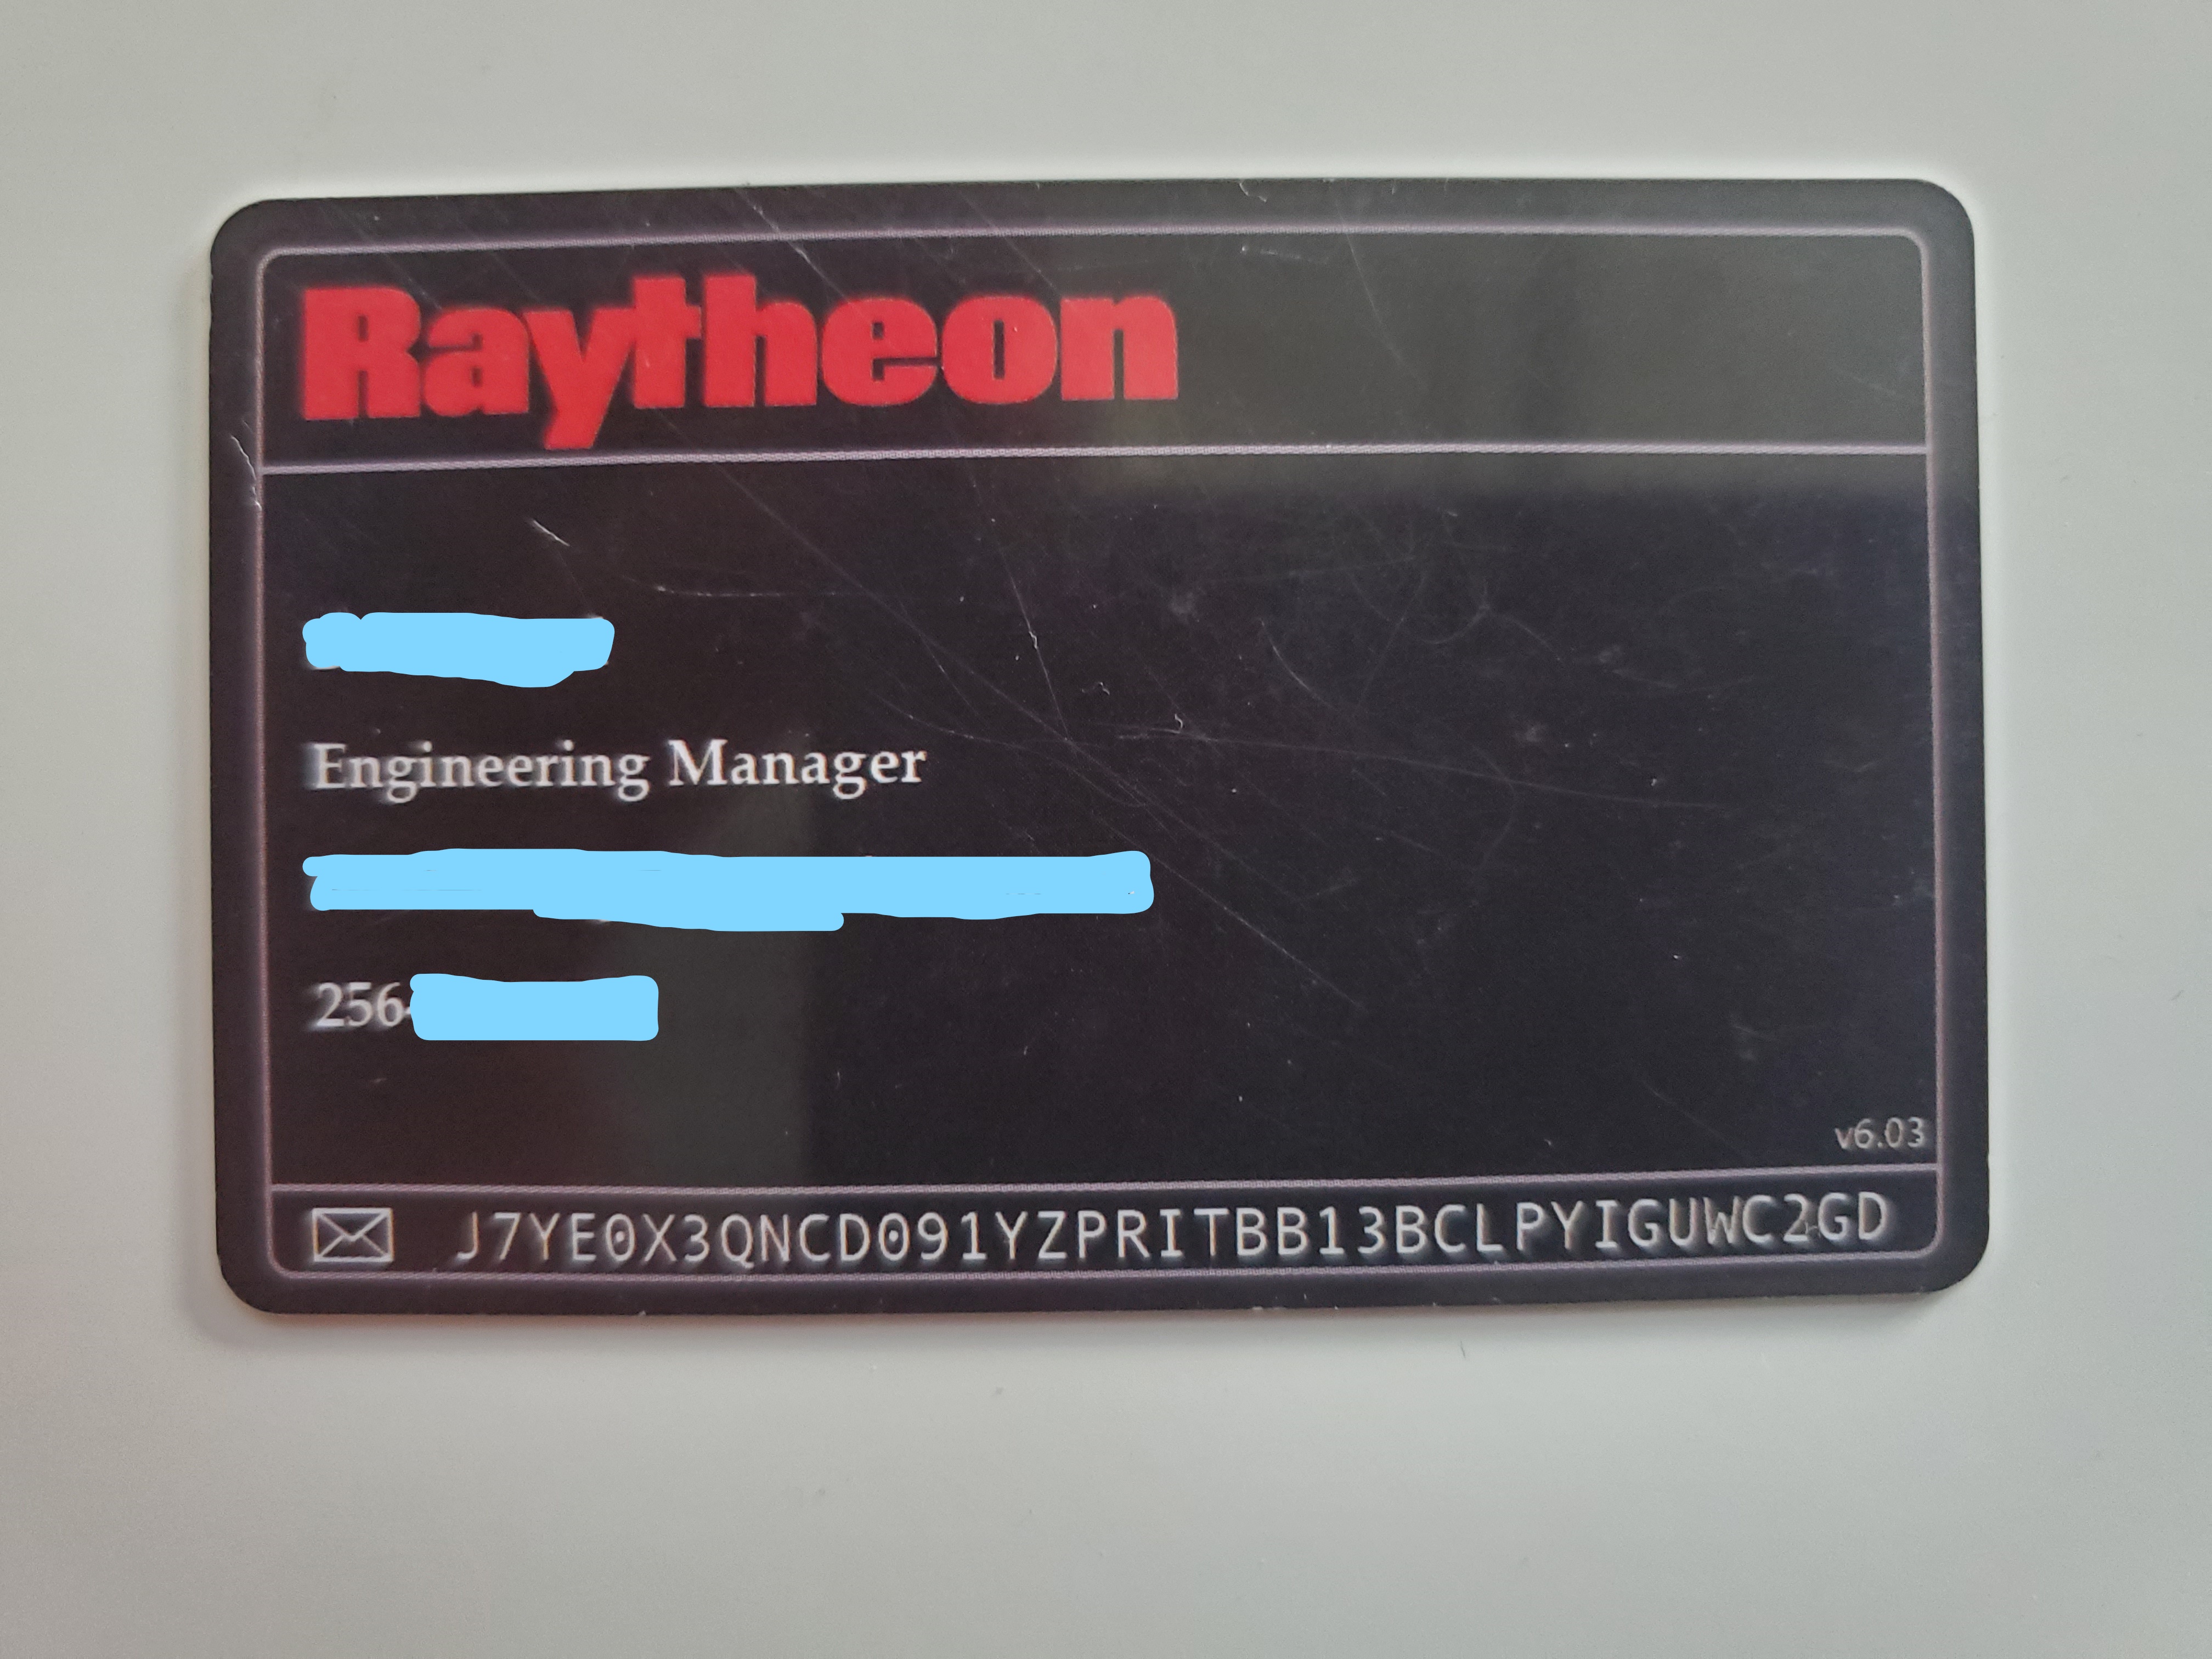 Raytheon Card Front